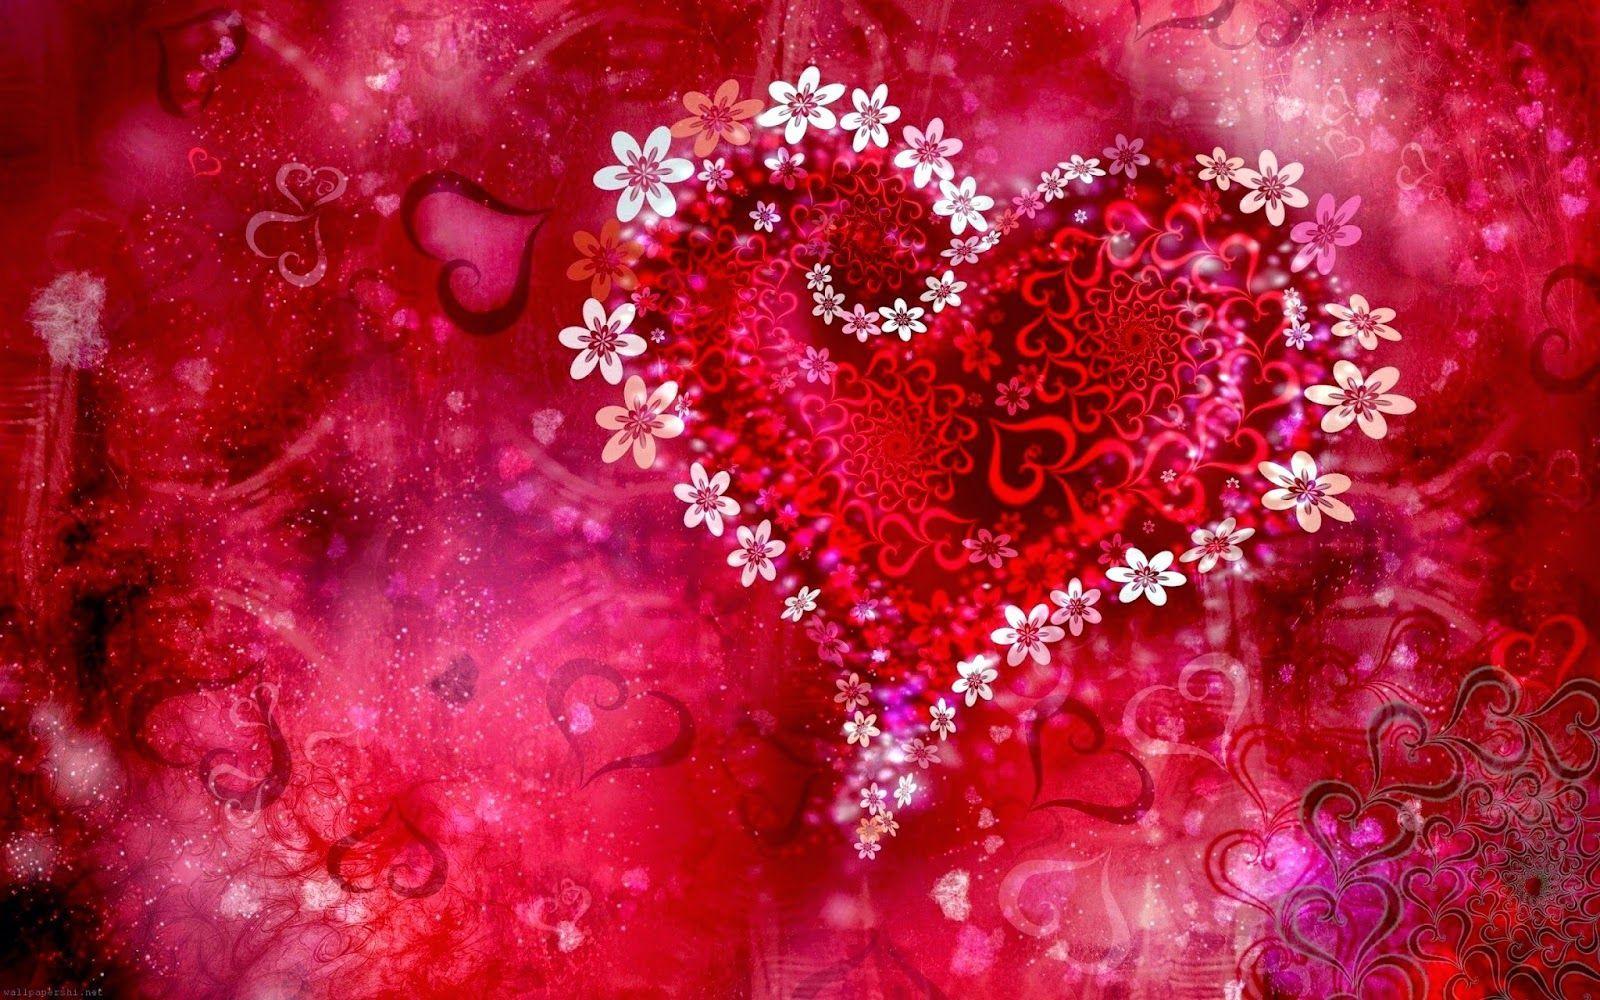 Romantic Love Heart Designs HD Cover Wallpaper. PIXHOME. All